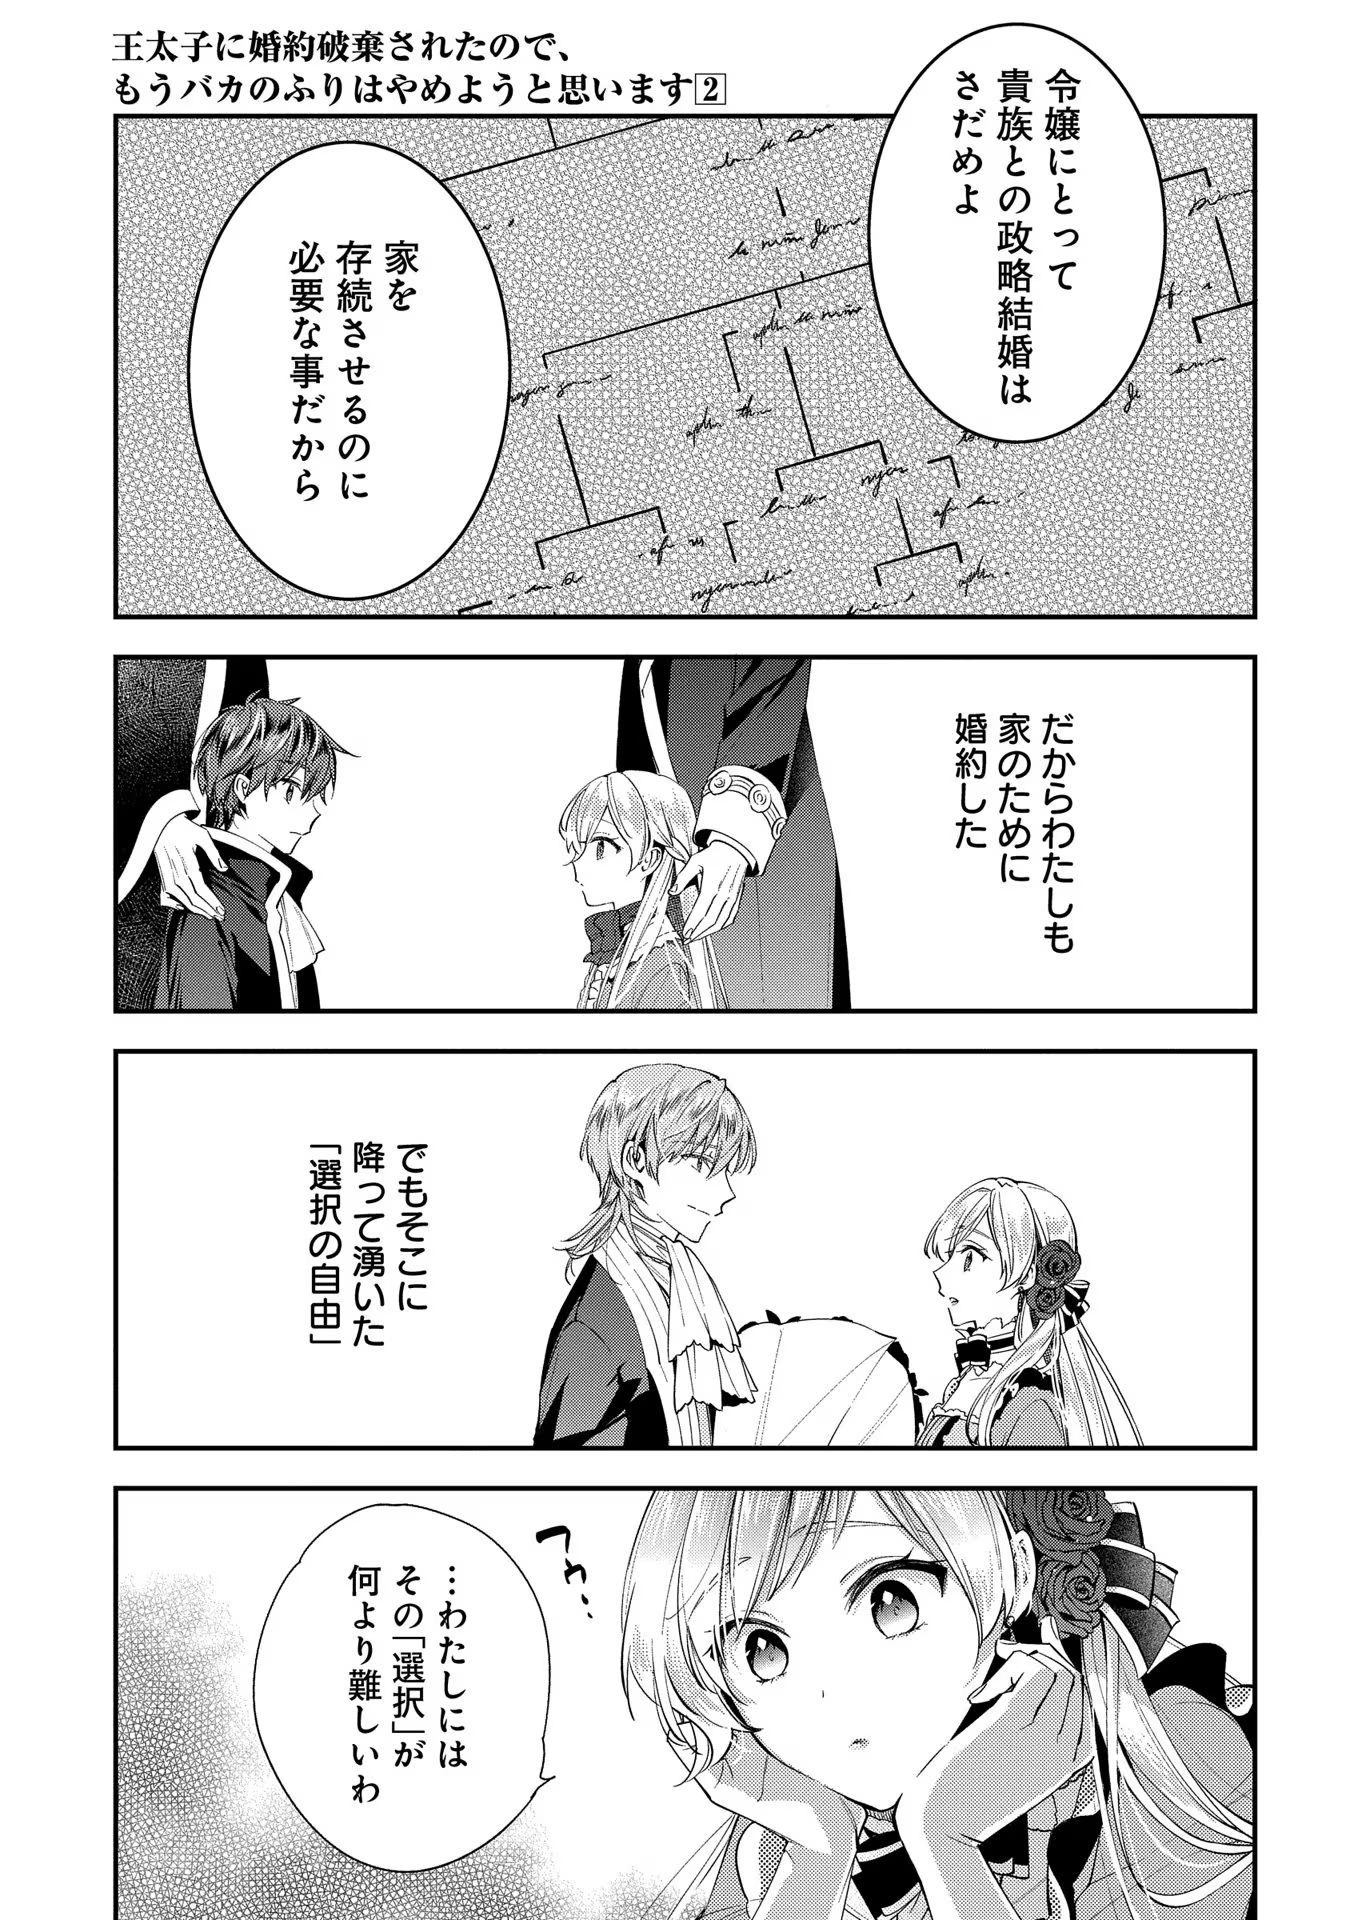 Outaishi ni Konyaku Hakisareta no de, Mou Baka no Furi wa Yameyou to Omoimasu - Chapter 6 - Page 10